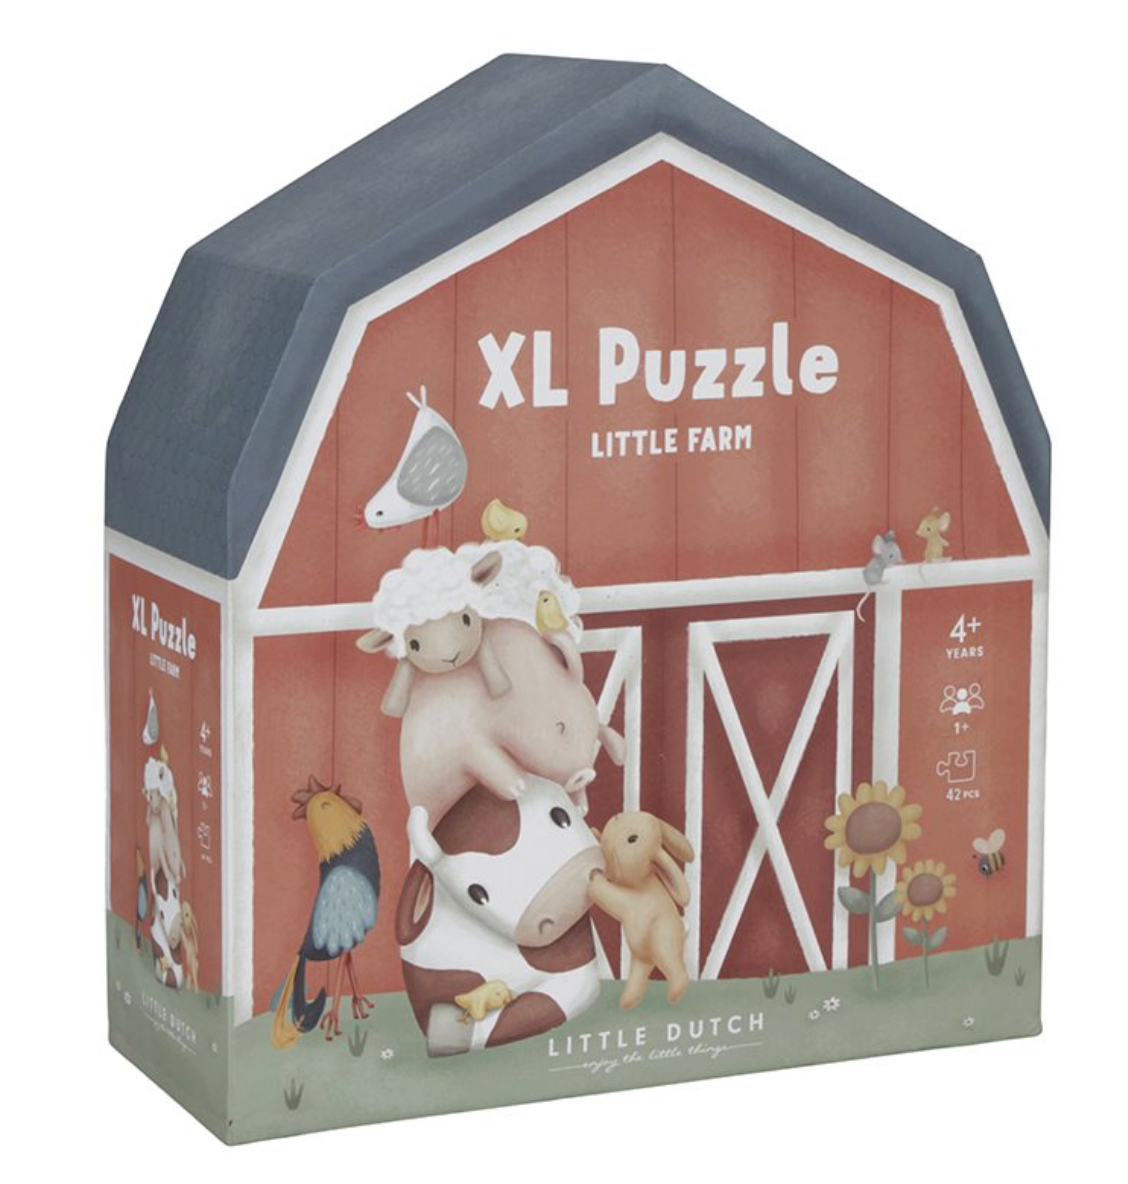 Little-Dutch-XL-Puzzle-Little-Farm-LD7150